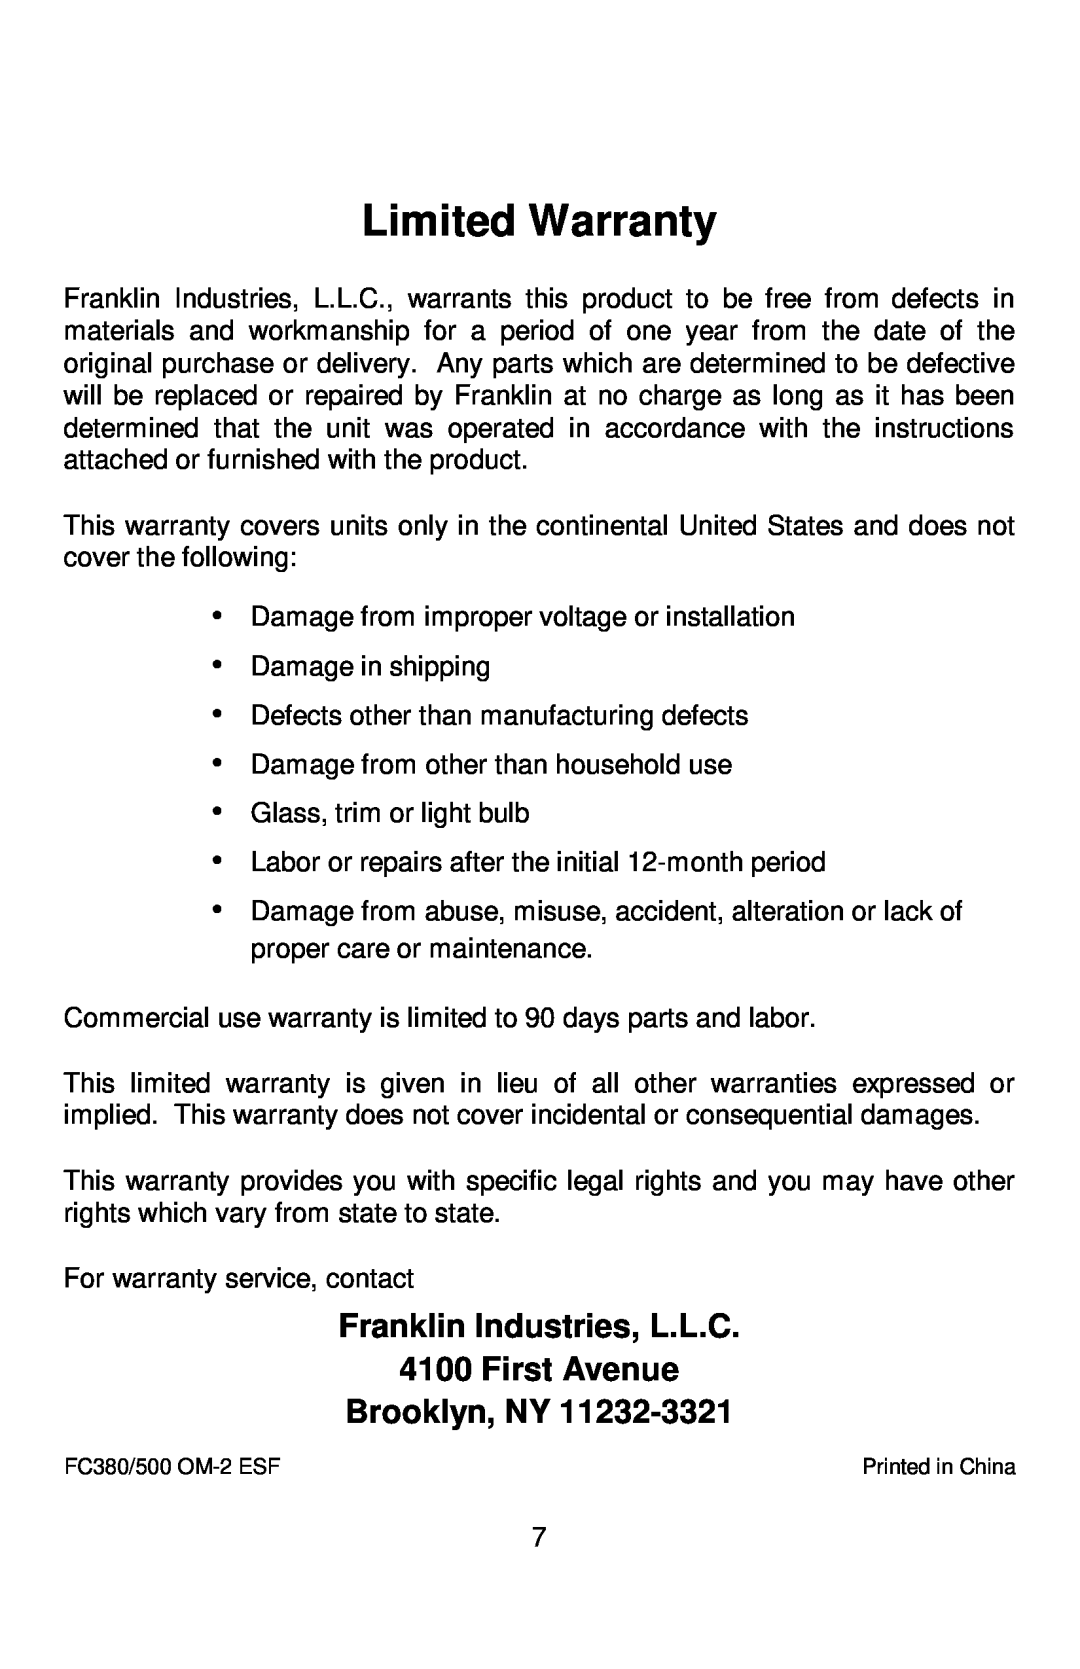 Franklin Industries, L.L.C FC-380 Series Limited Warranty, Franklin Industries, L.L.C 4100 First Avenue, Brooklyn, NY 